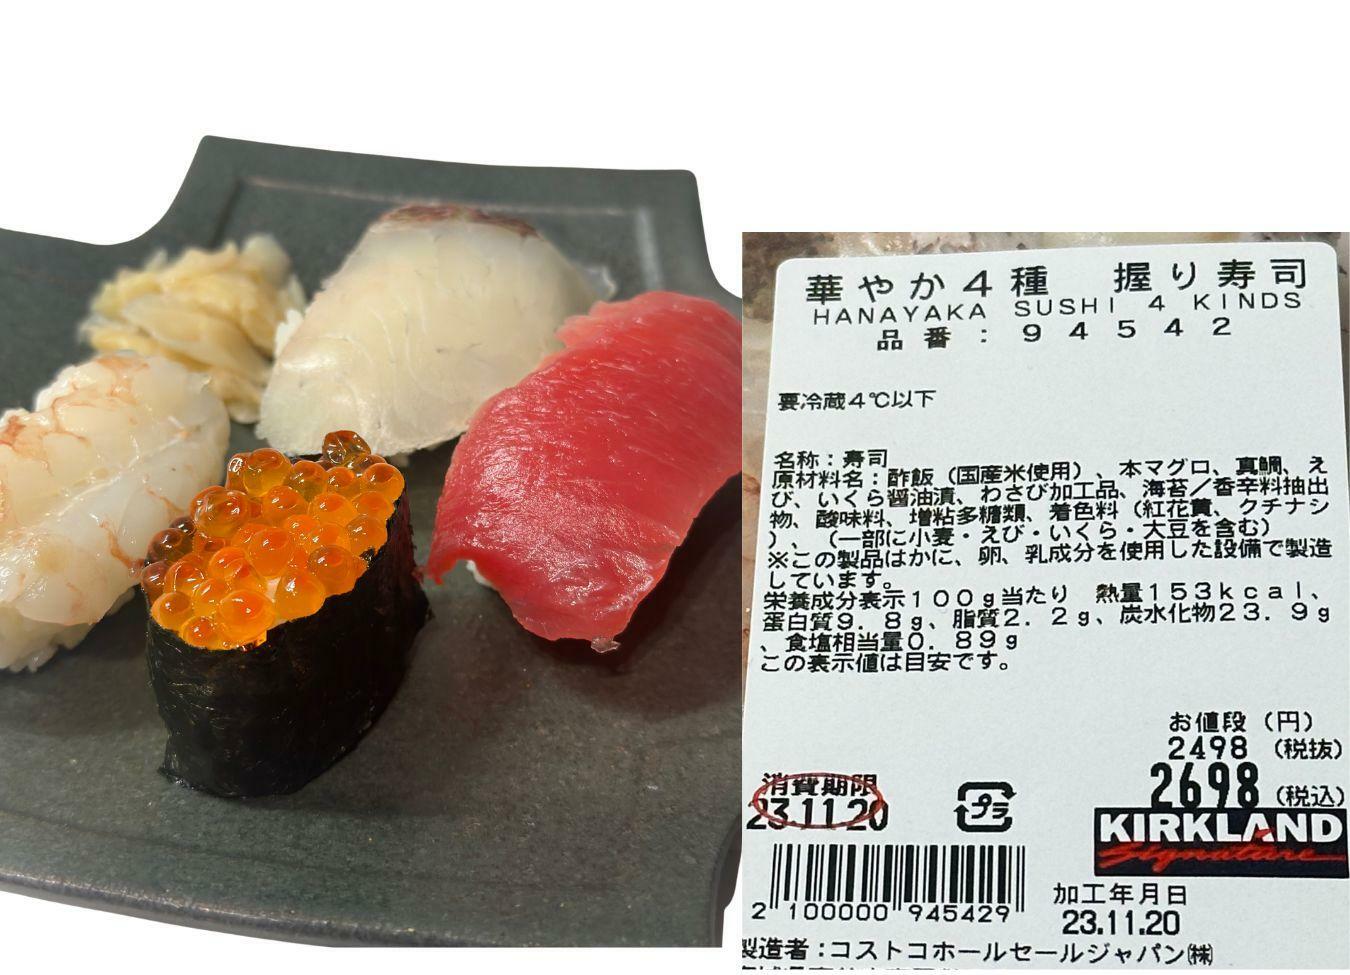 華やか4種握り寿司は本マグロ、いくら、真鯛、エビの豪華なラインナップ